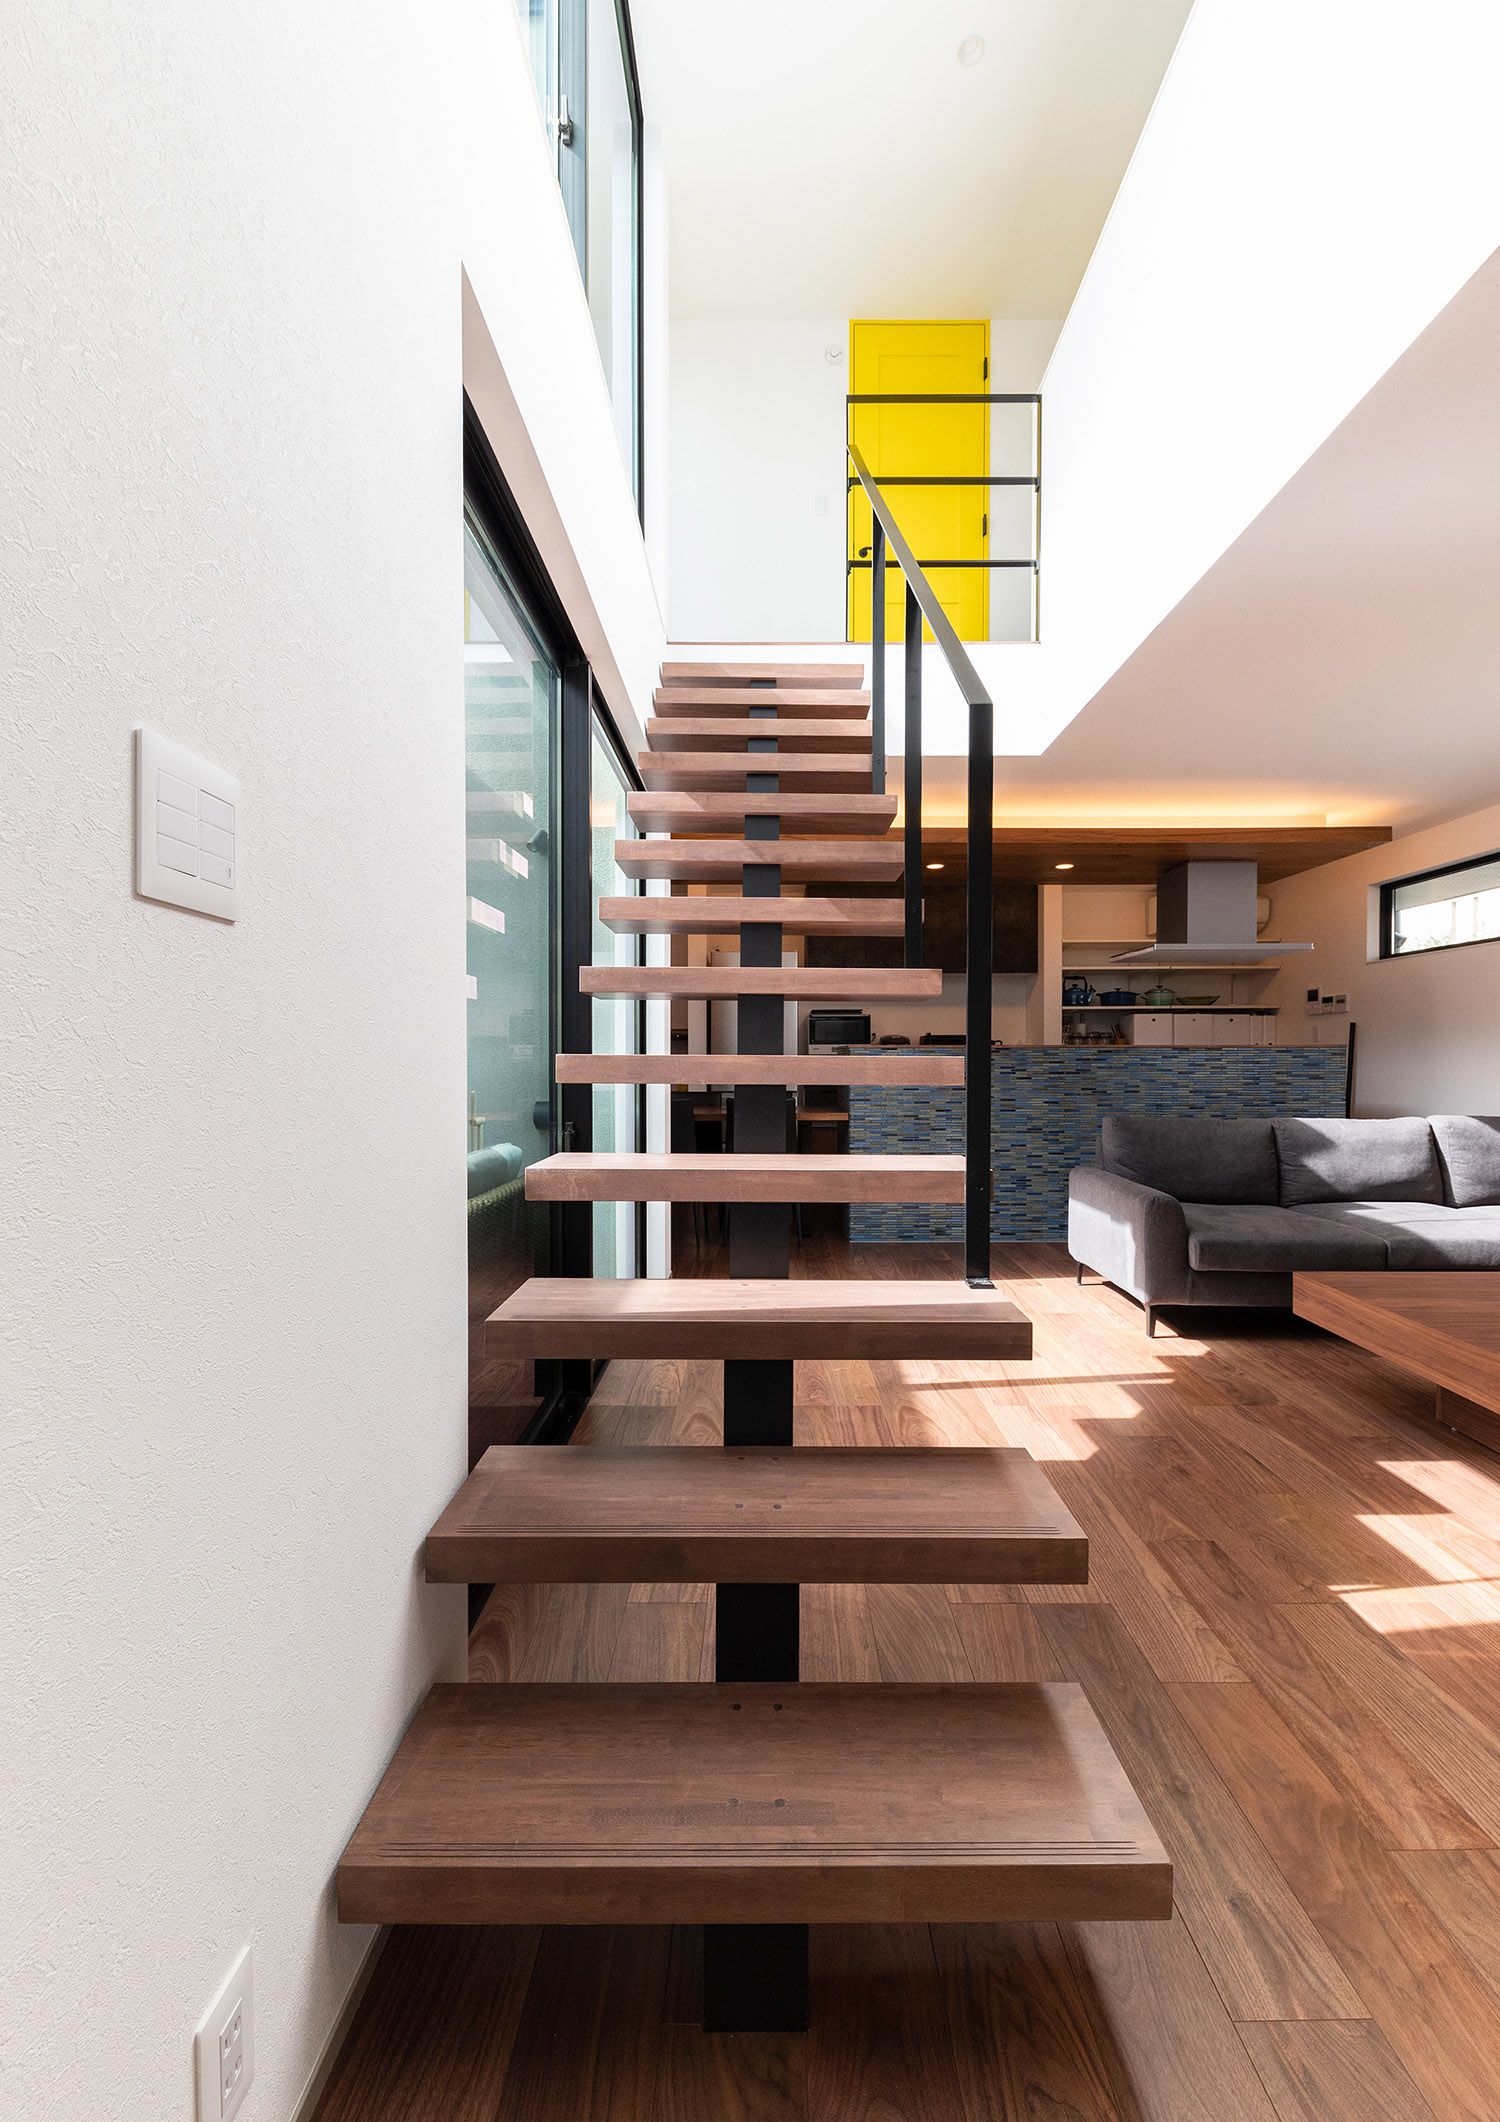 濃い木材を使用したスケルトンのリビングイン階段・デザイン住宅